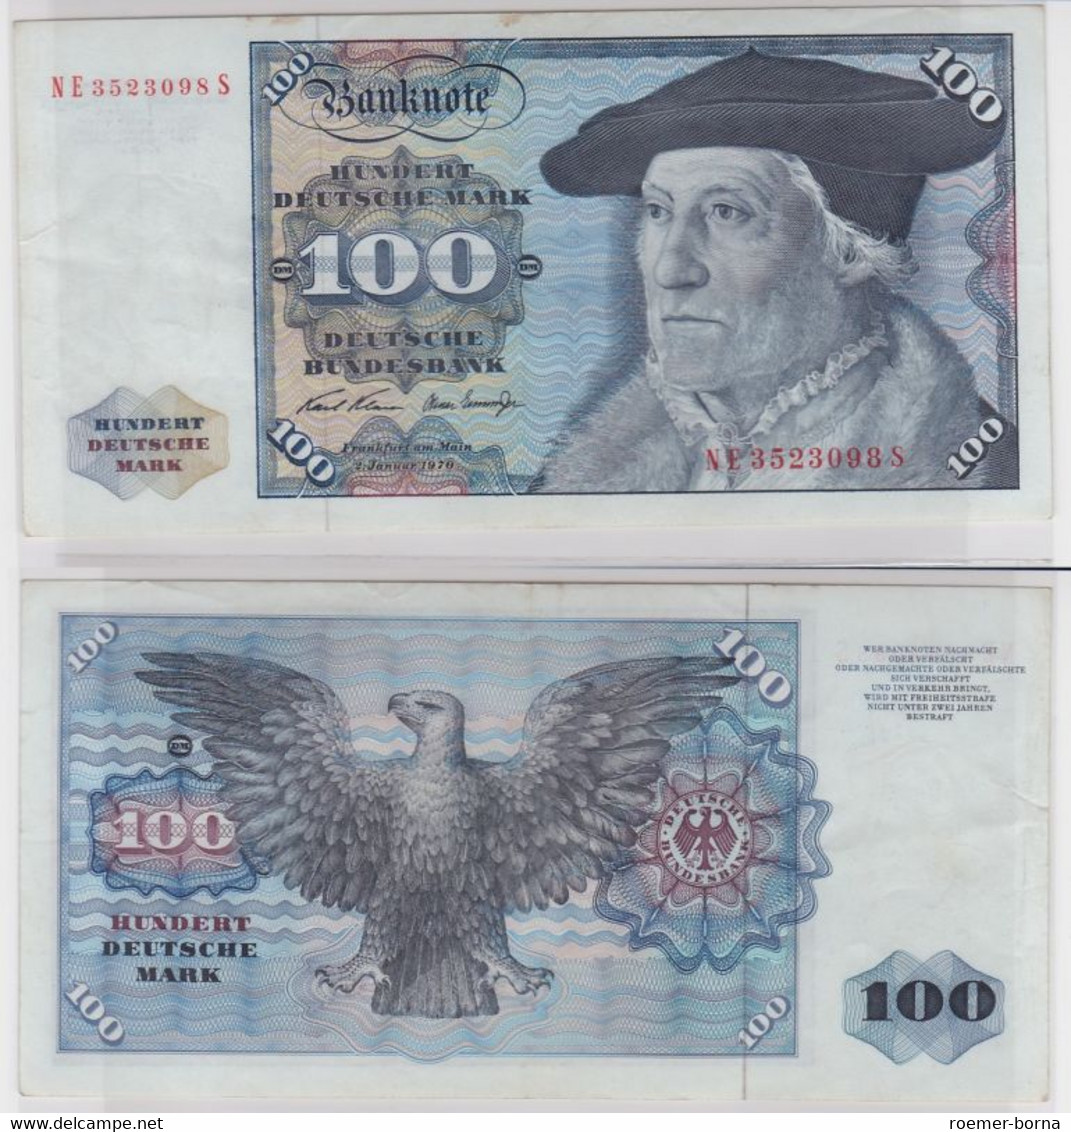 T146362 Banknote 100 DM Deutsche Mark Ro. 273b Schein 2.Jan 1970 KN NE 3523098 S - 100 Deutsche Mark